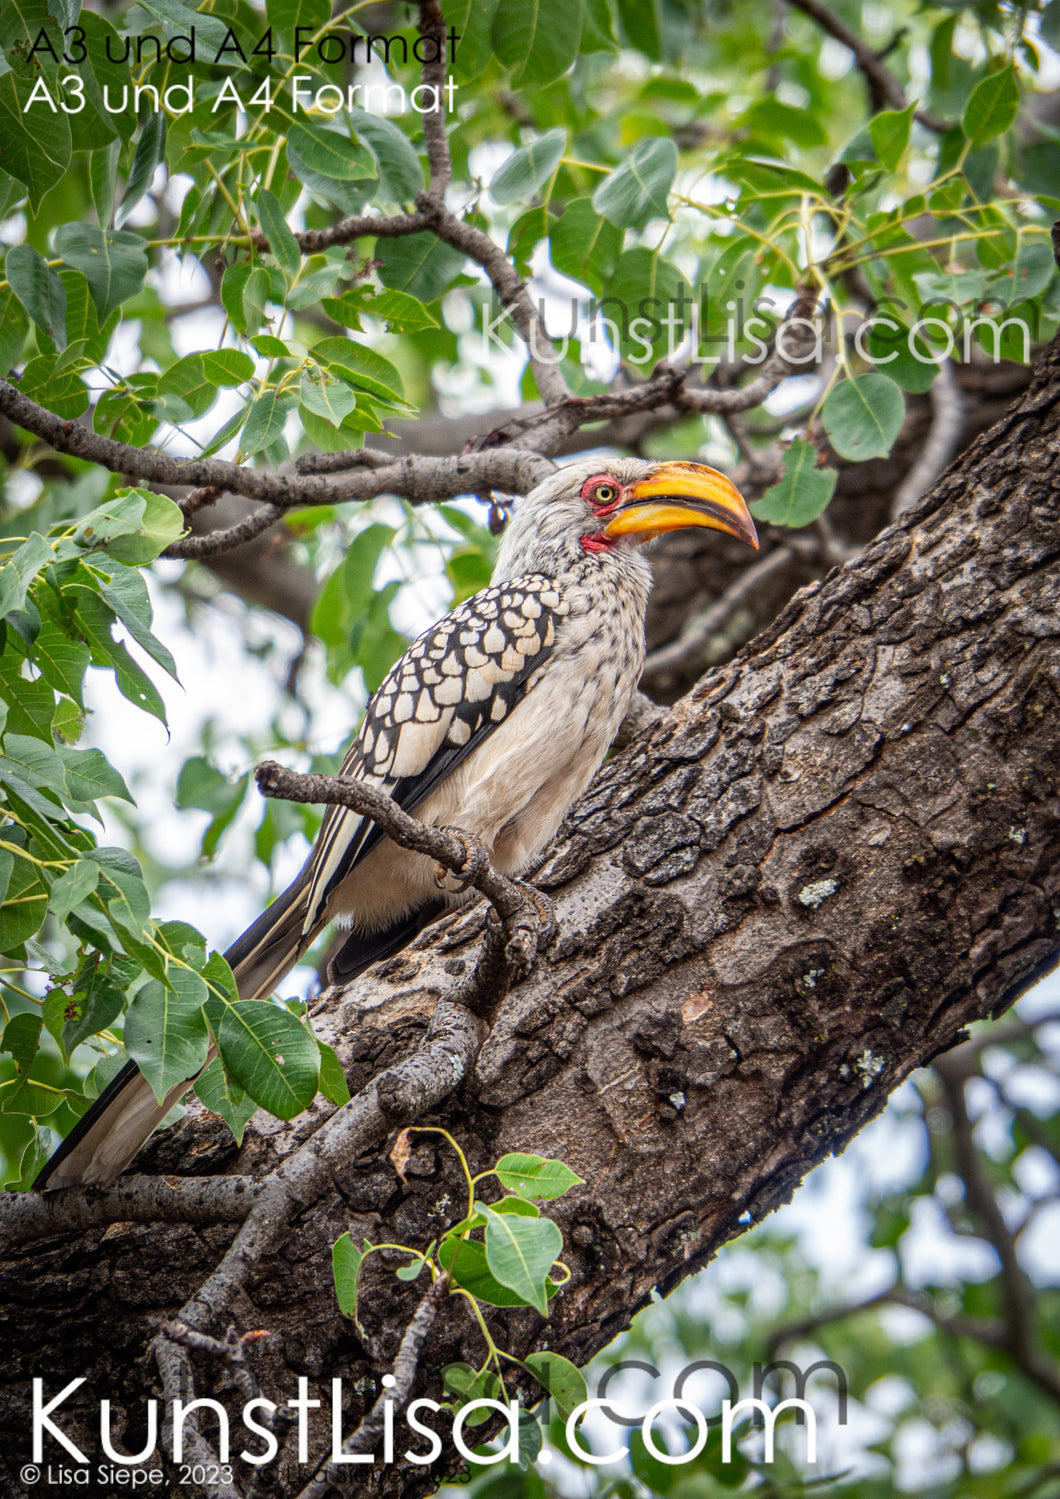 Seitenansicht-eines-Gelbschnabel-Nashornvogels-auf-Baumstamm-in-grünen-Baum-in-Wildnis-in-Südafrika-Format-A3-und-A4